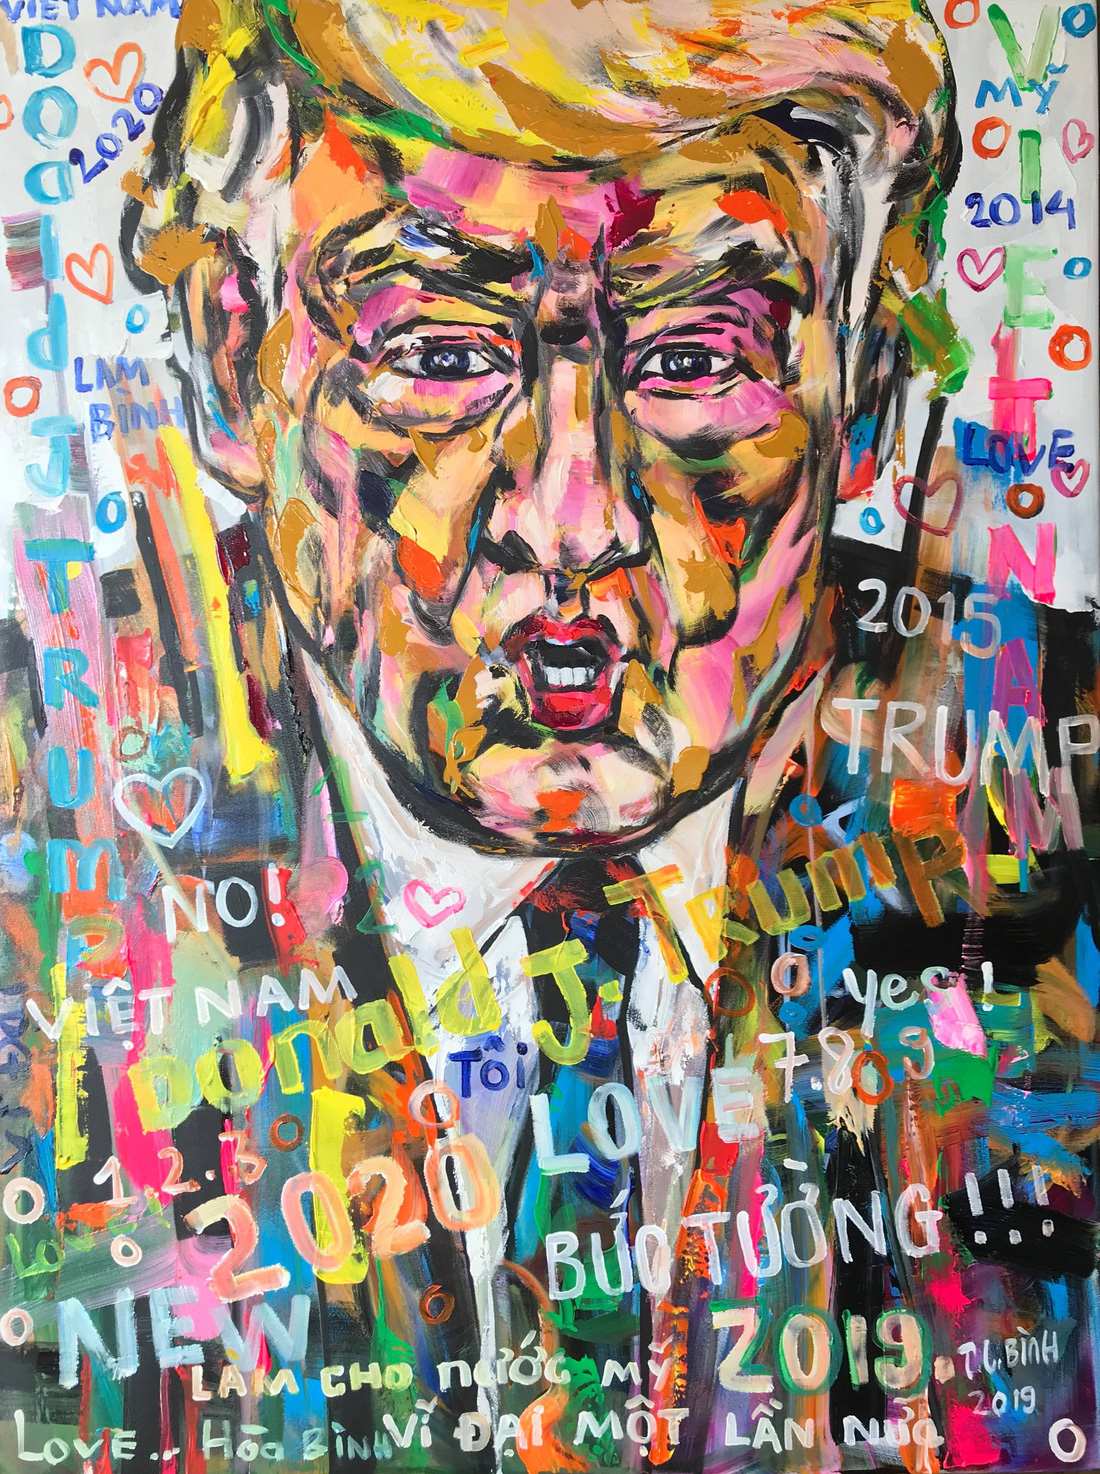 5 năm miệt mài vẽ Donald Trump, họa sĩ Việt được mời triển lãm tại Ý - Ảnh 1.